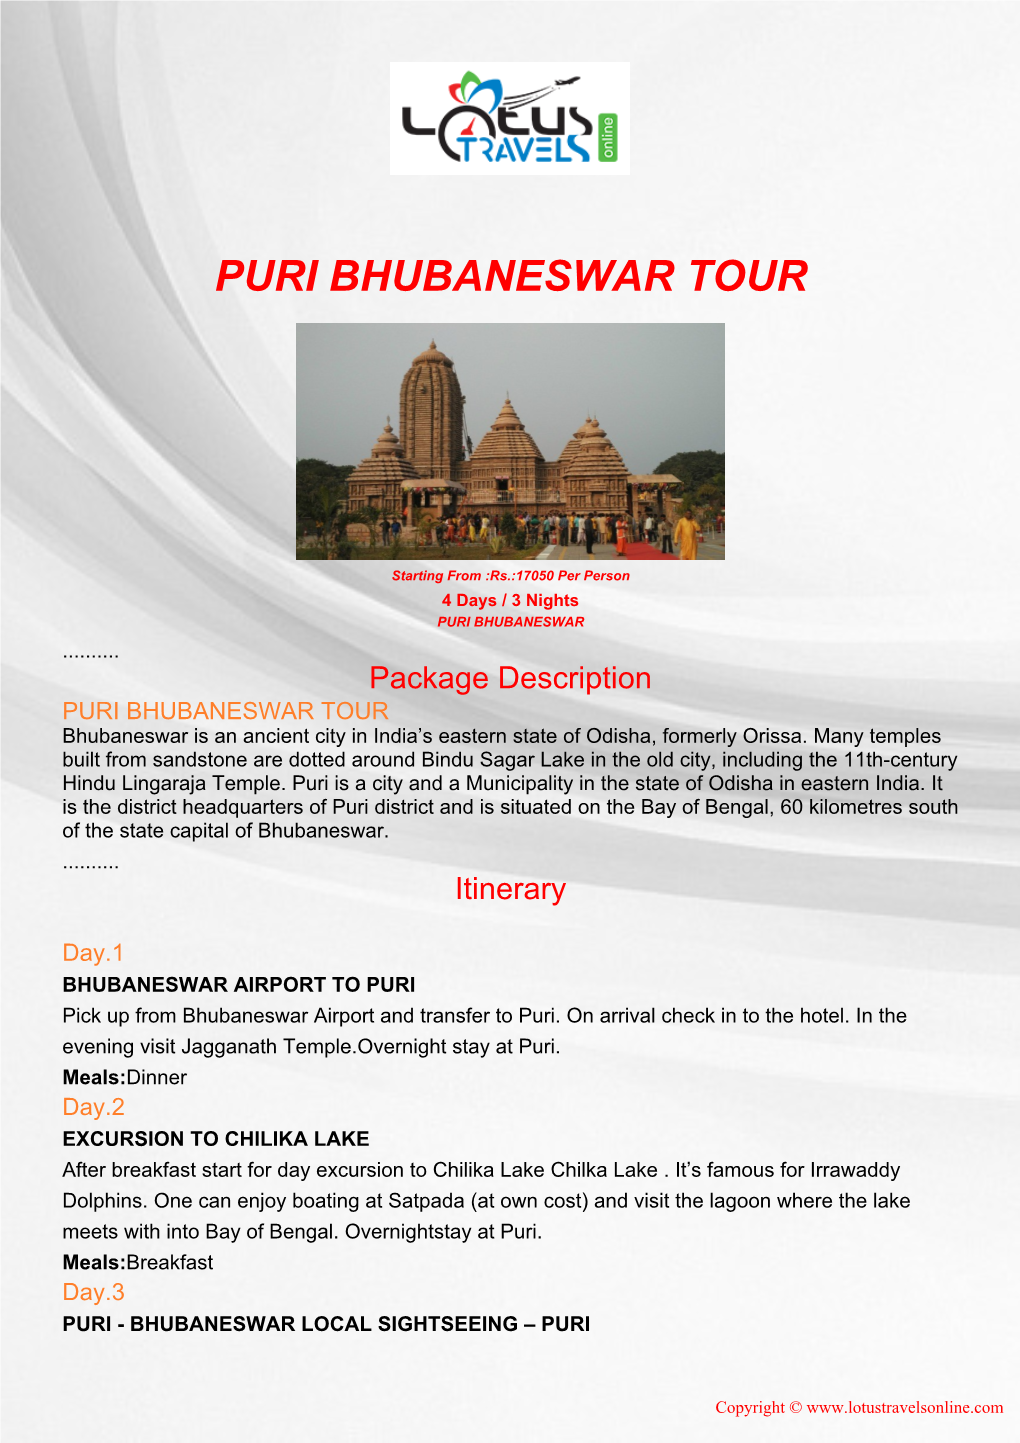 Puri Bhubaneswar Tour